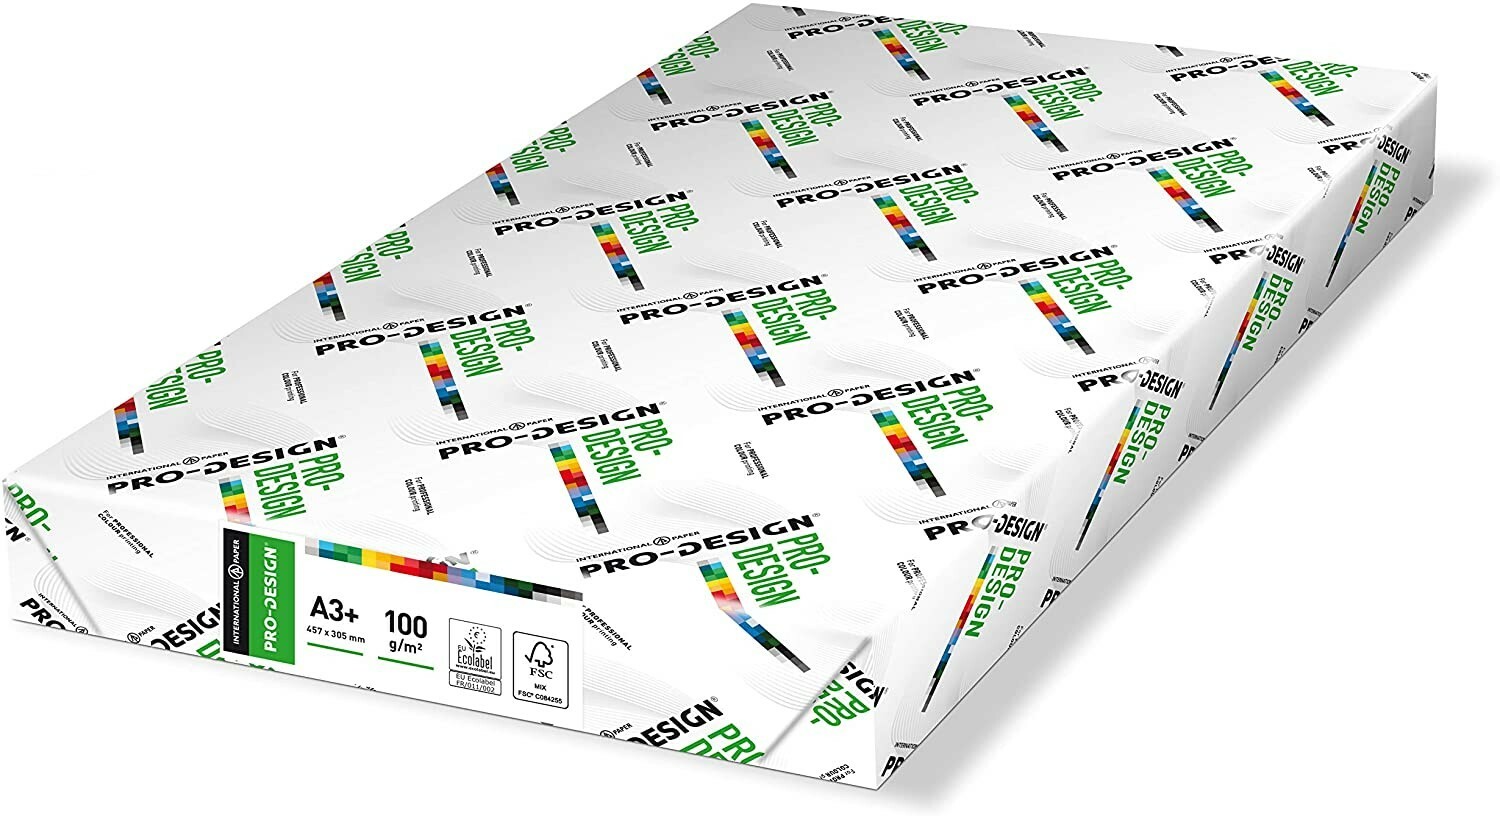 100 feuilles de papier calque A4 100g /m² qualité premium